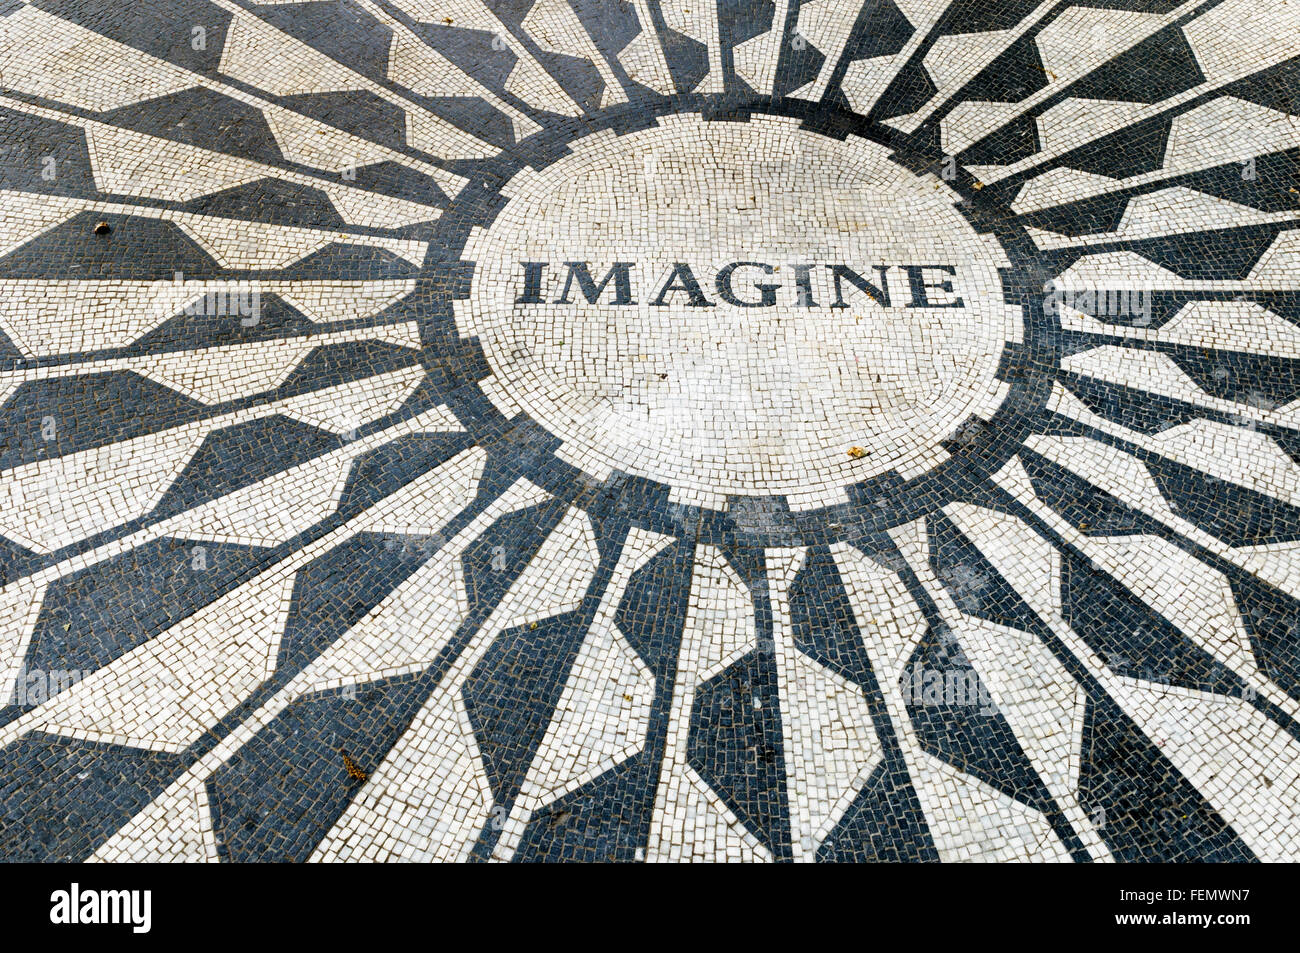 Détail de la mosaïque de 'imagine' de John Lennon memorial, champs de fraises, Central Park, New York City, USA Banque D'Images